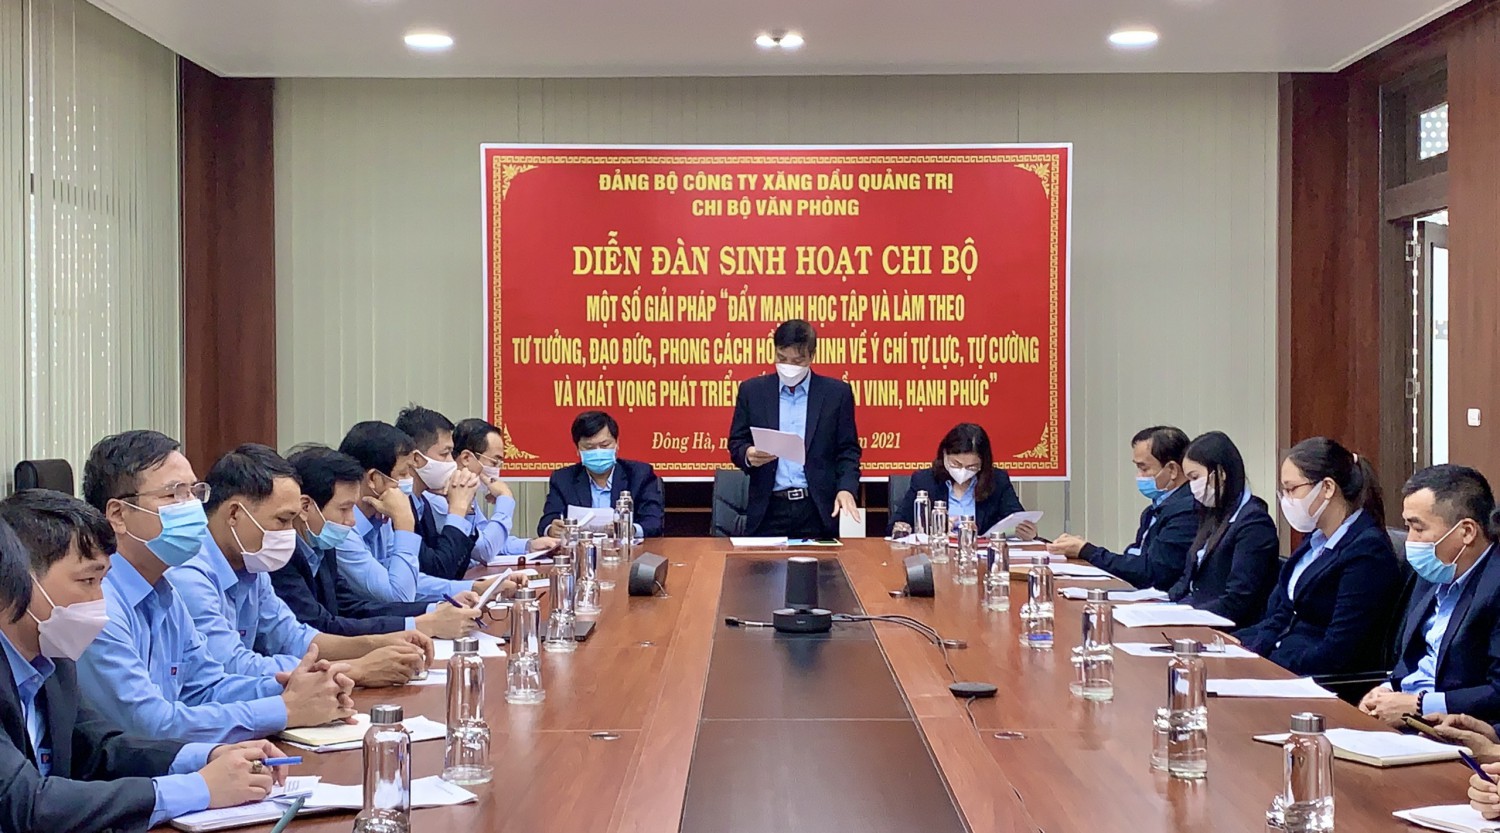 Bí thư Chi bộ Văn phòng Nguyễn Quang Phát phát biểu đề dẫn Diễn đàn